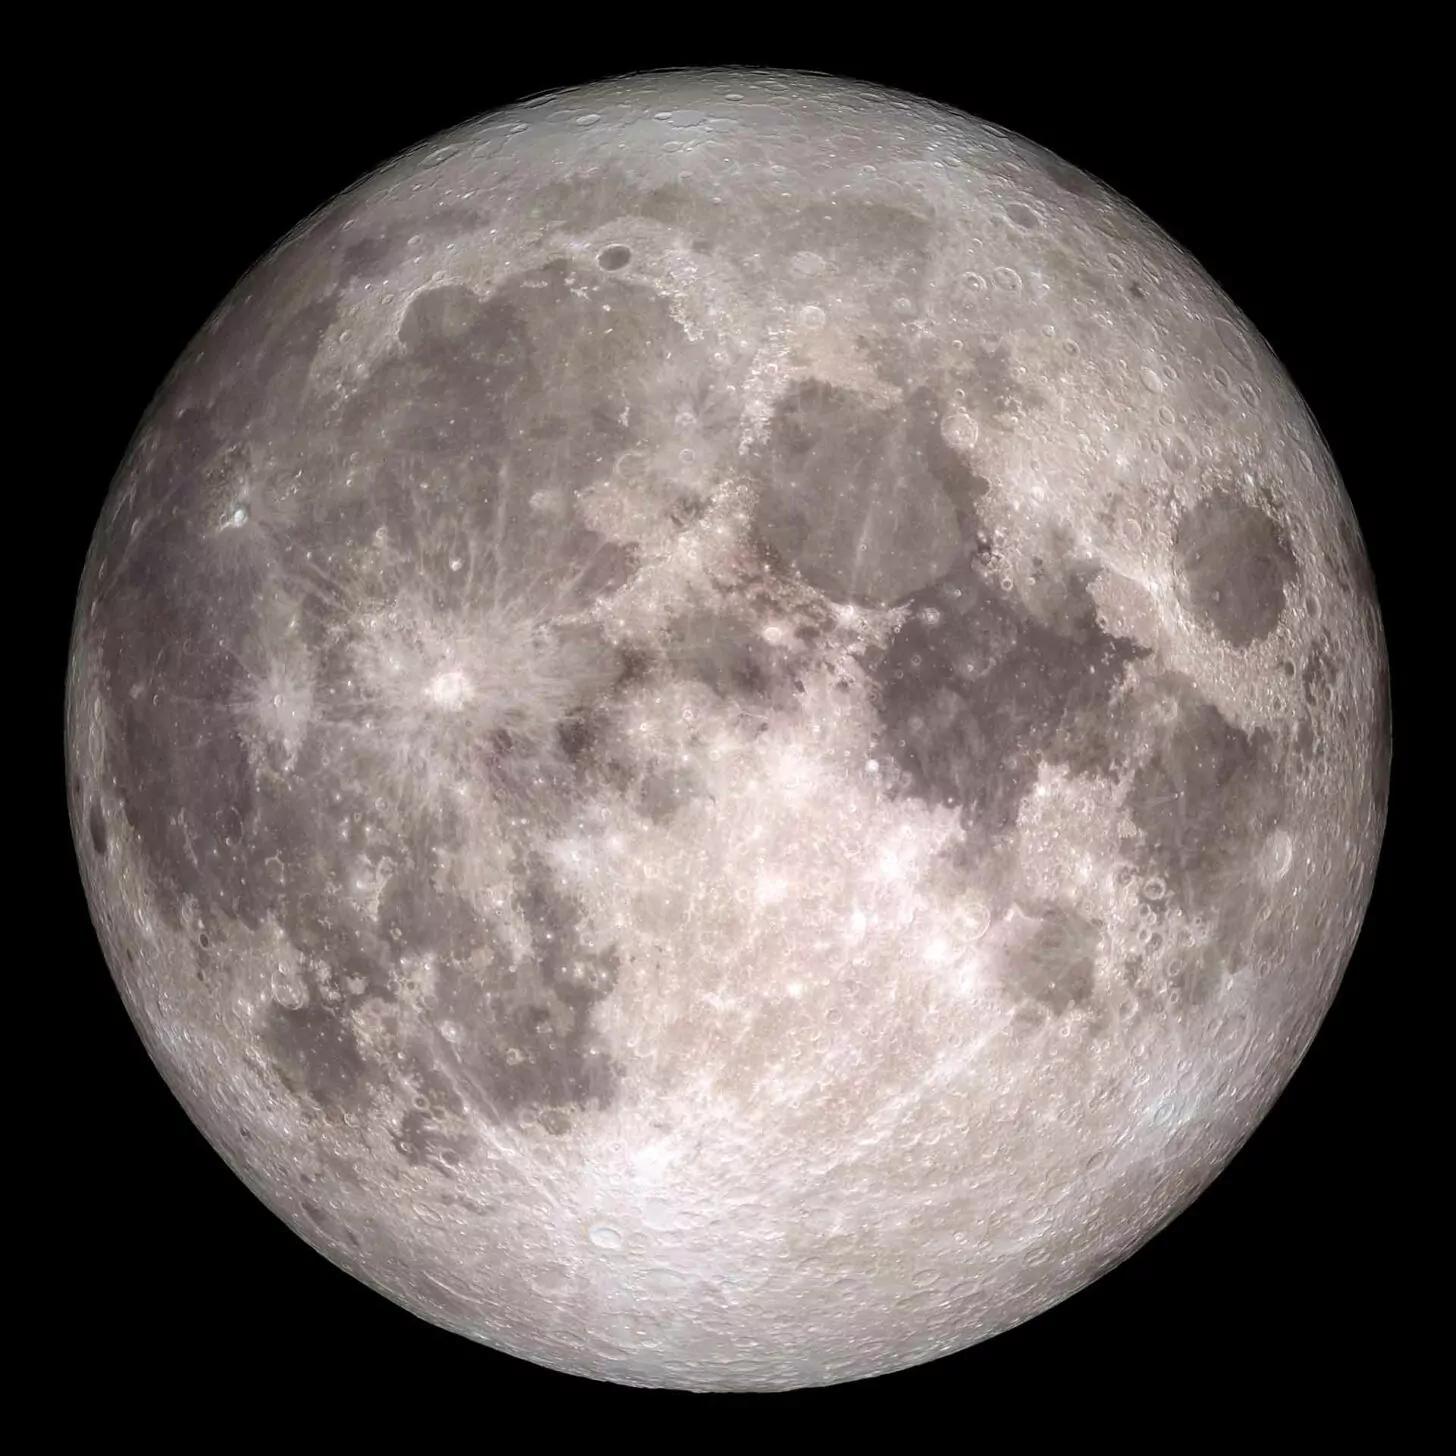 سامسونگ در تله؛ انتشار عکسی های جعلی از ماه